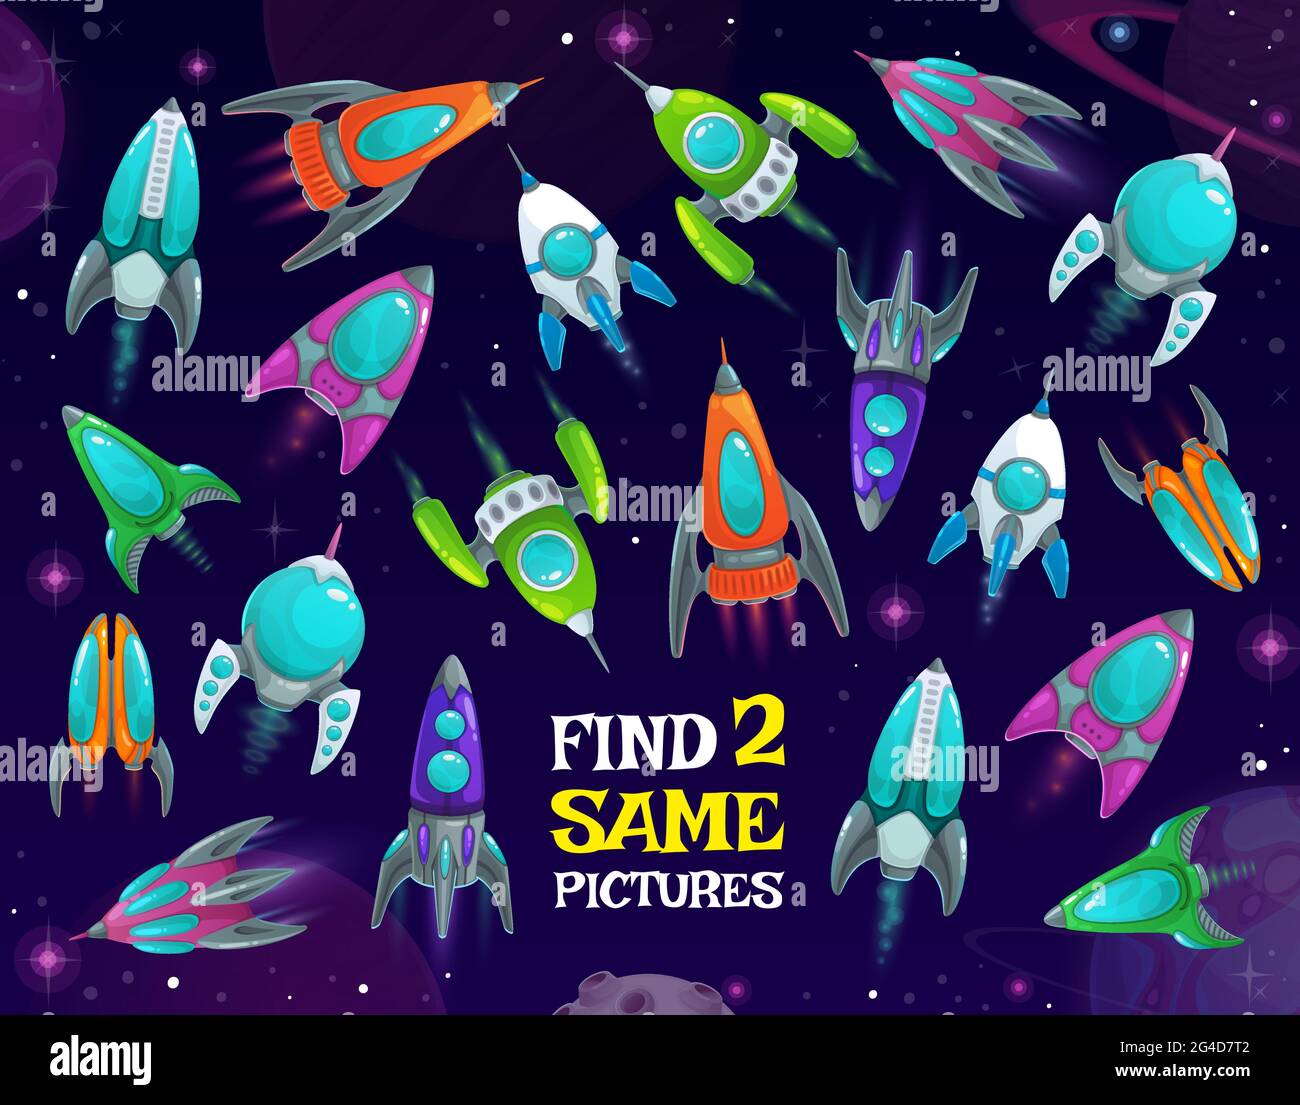 Les vaisseaux spatiaux dans le jeu d'enfants de l'espace, trouver deux mêmes fusées vecteur énigme avec des navettes dans la galaxie. Test éducatif logique des enfants avec l'espace drôle dans les navires Illustration de Vecteur